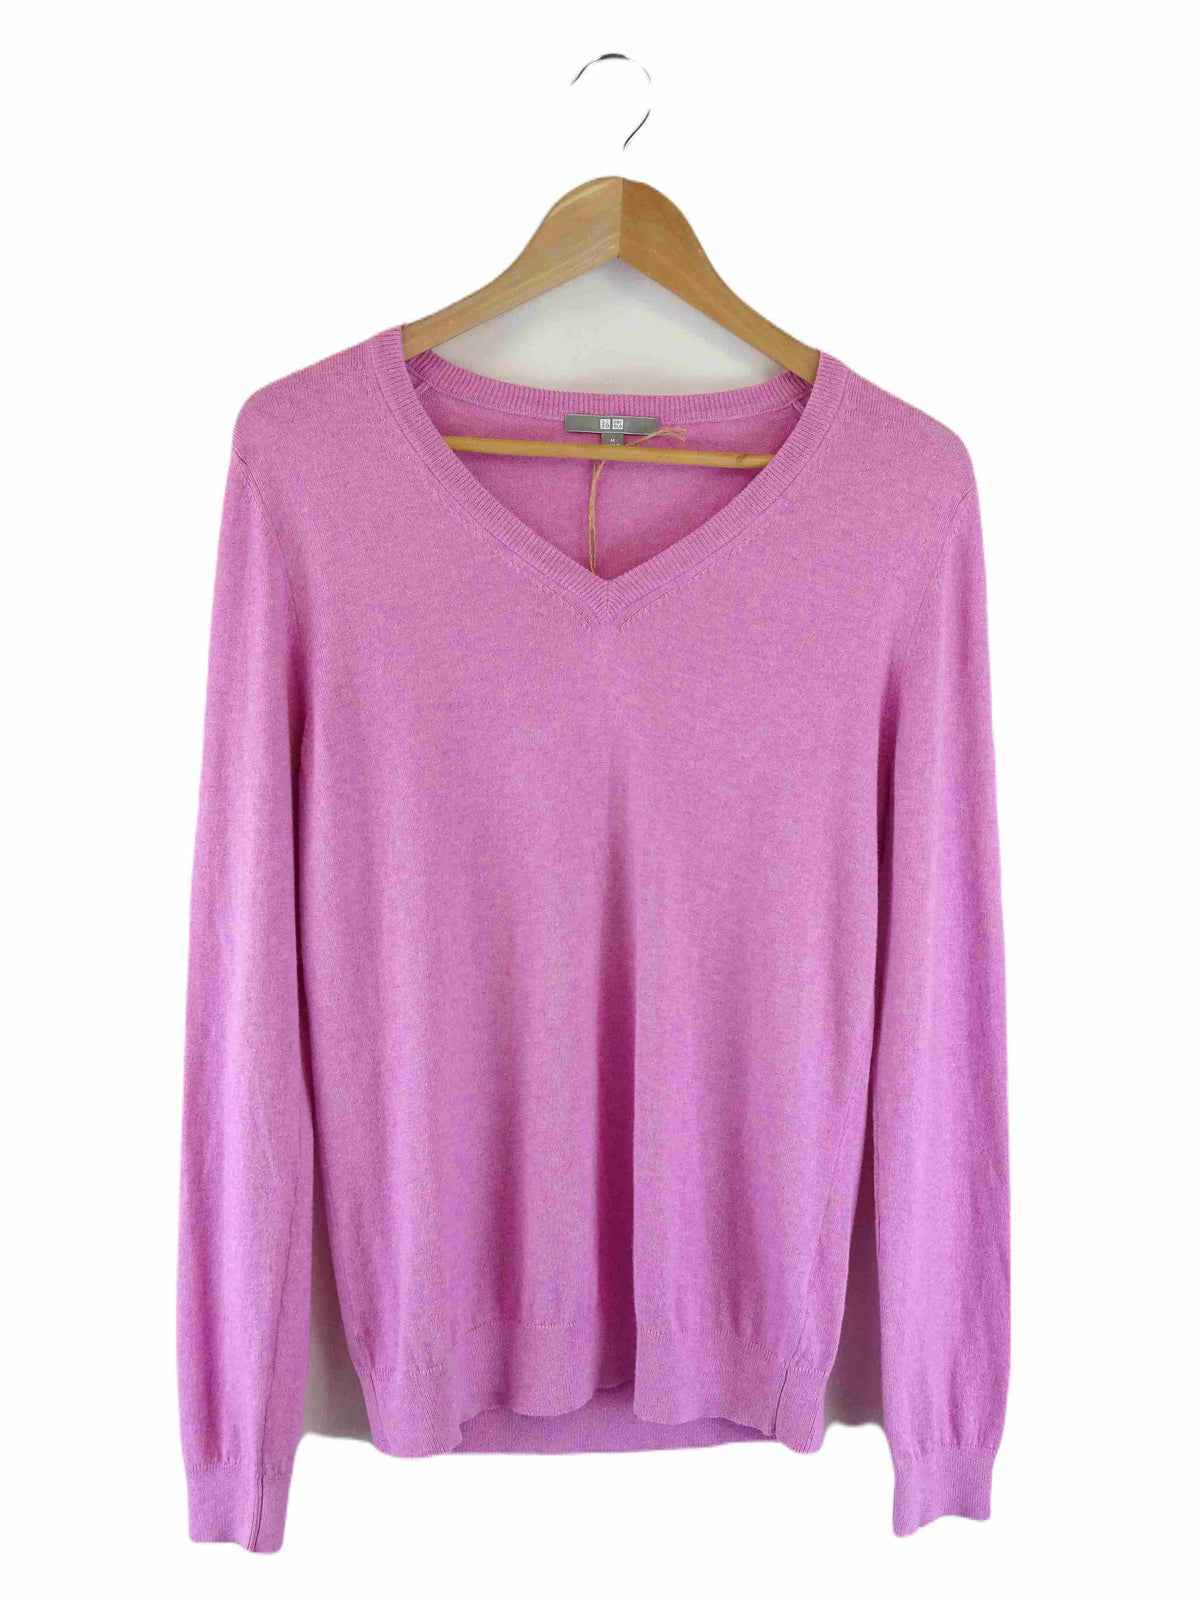 Uniqlo Pink V-Neck Sweater M